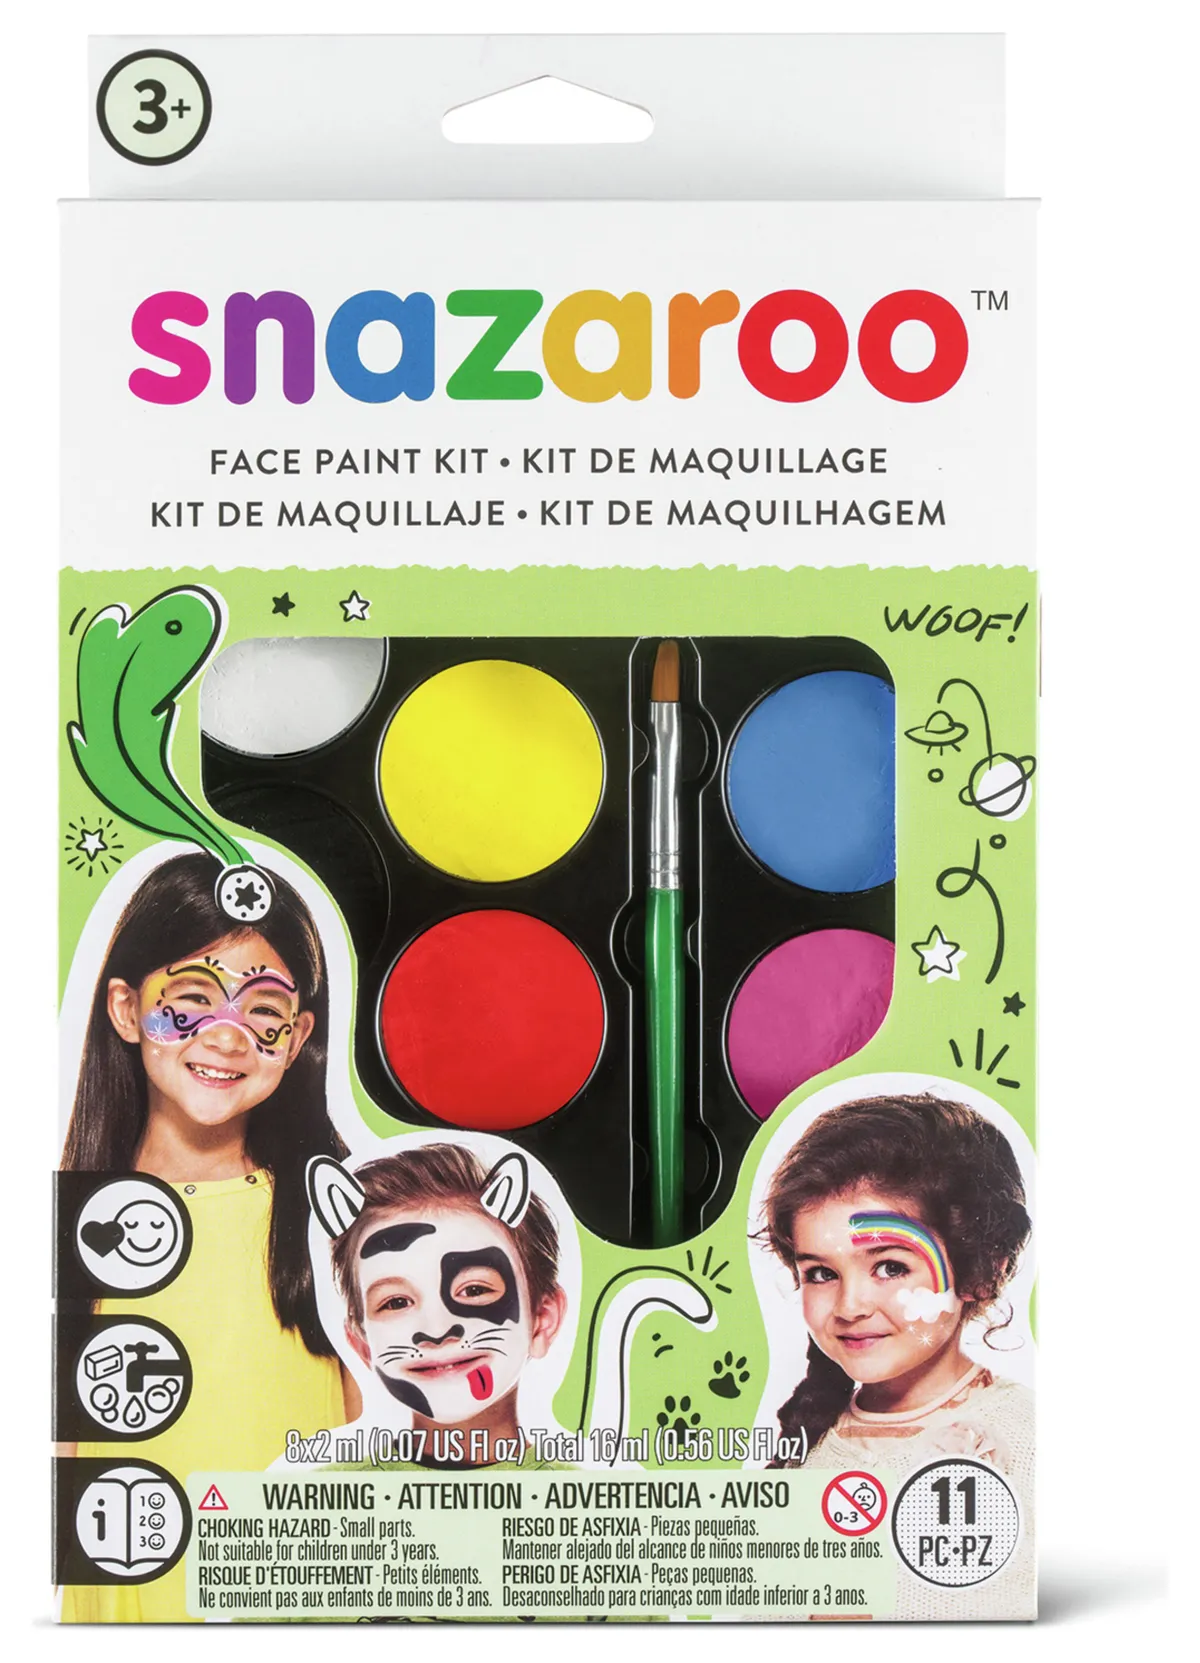 Snazroo face paint